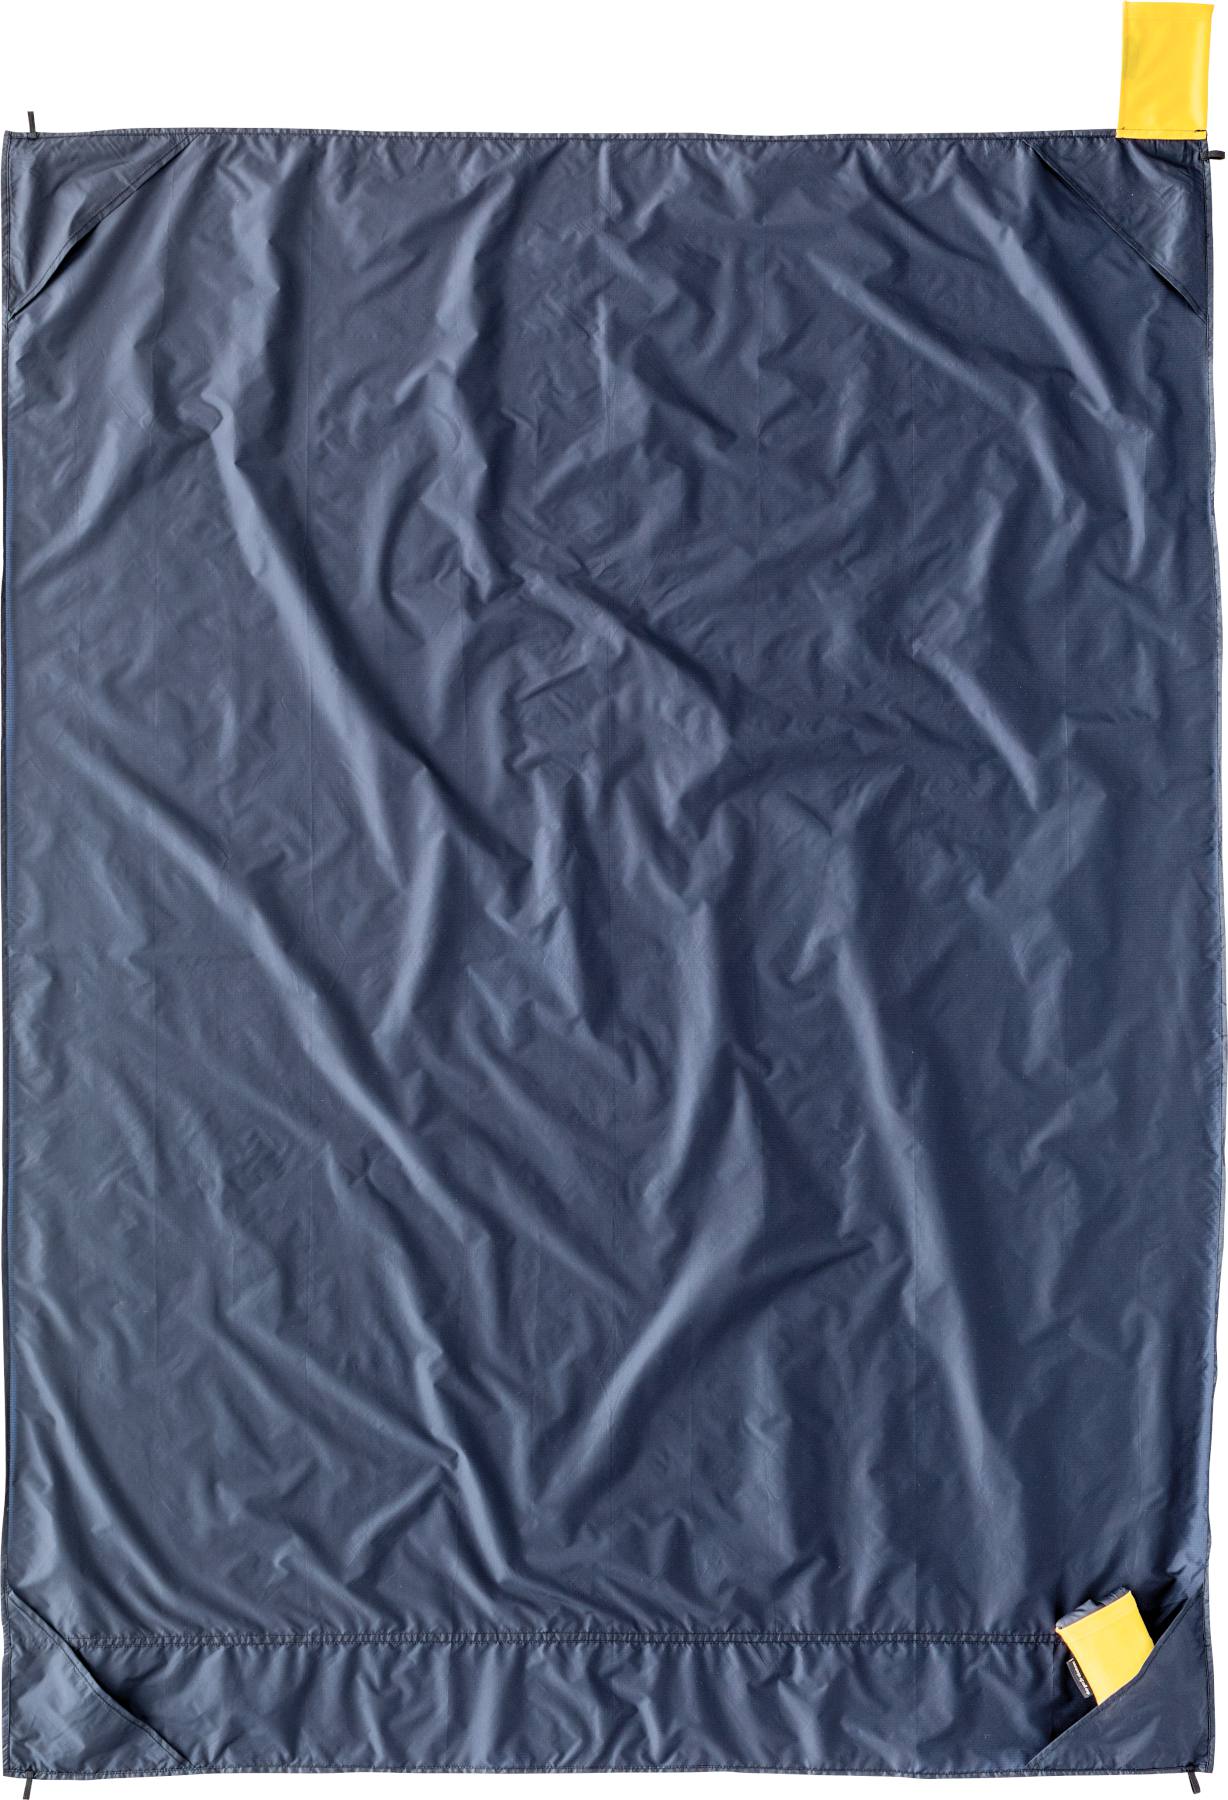 Image of Cocoon Outdoor Blanket 8000mm 160 x 120 cm